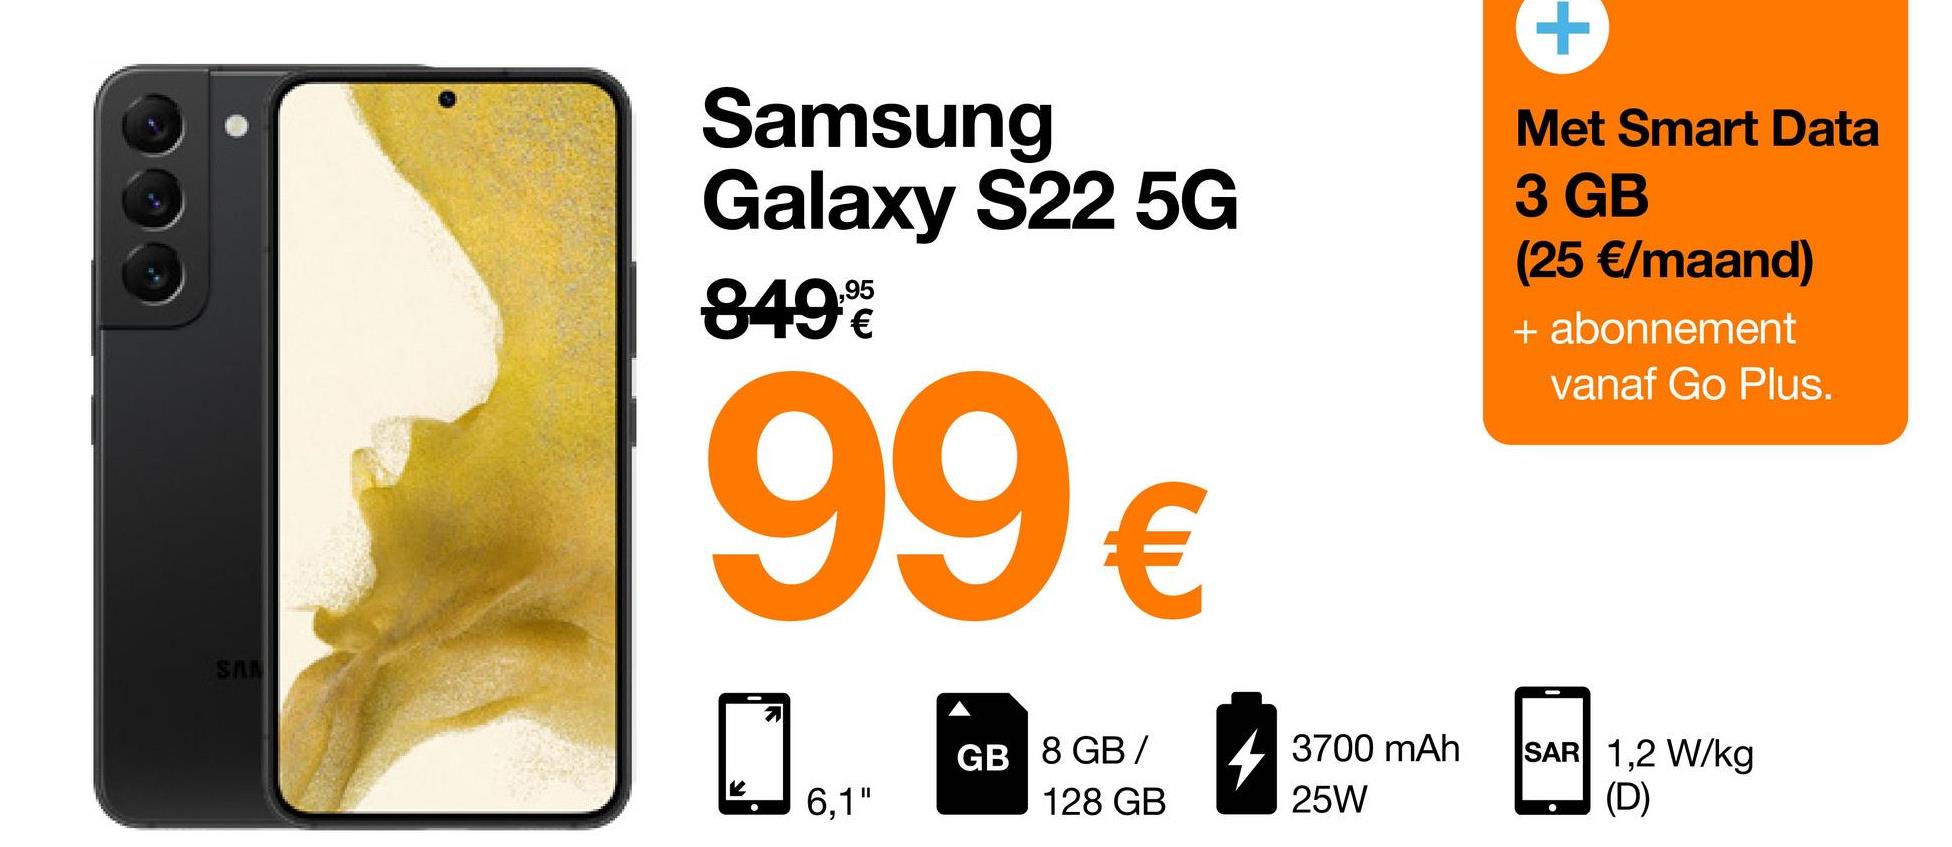 SAN
Samsung
Galaxy S22 5G
849%
99€
71
GB 8 GB/
128 GB
6,1"
3700 mAh
25W
Met Smart Data
3 GB
(25 €/maand)
+ abonnement
vanaf Go Plus.
SAR 1,2 W/kg
(D)
●